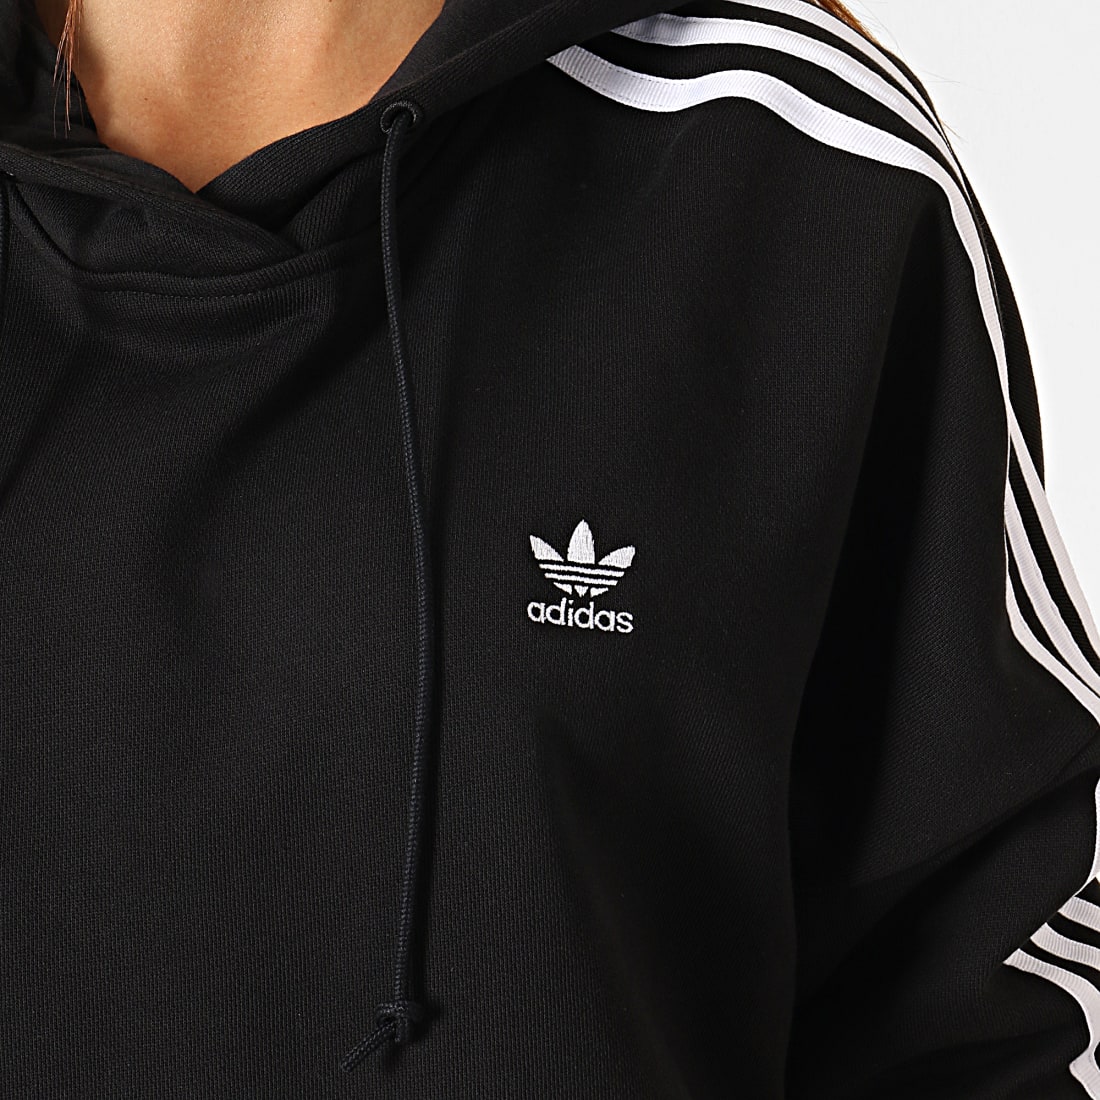 Adidas Originals - Sweat Capuche Femme Avec Bandes Cropped ED7554 Noir 